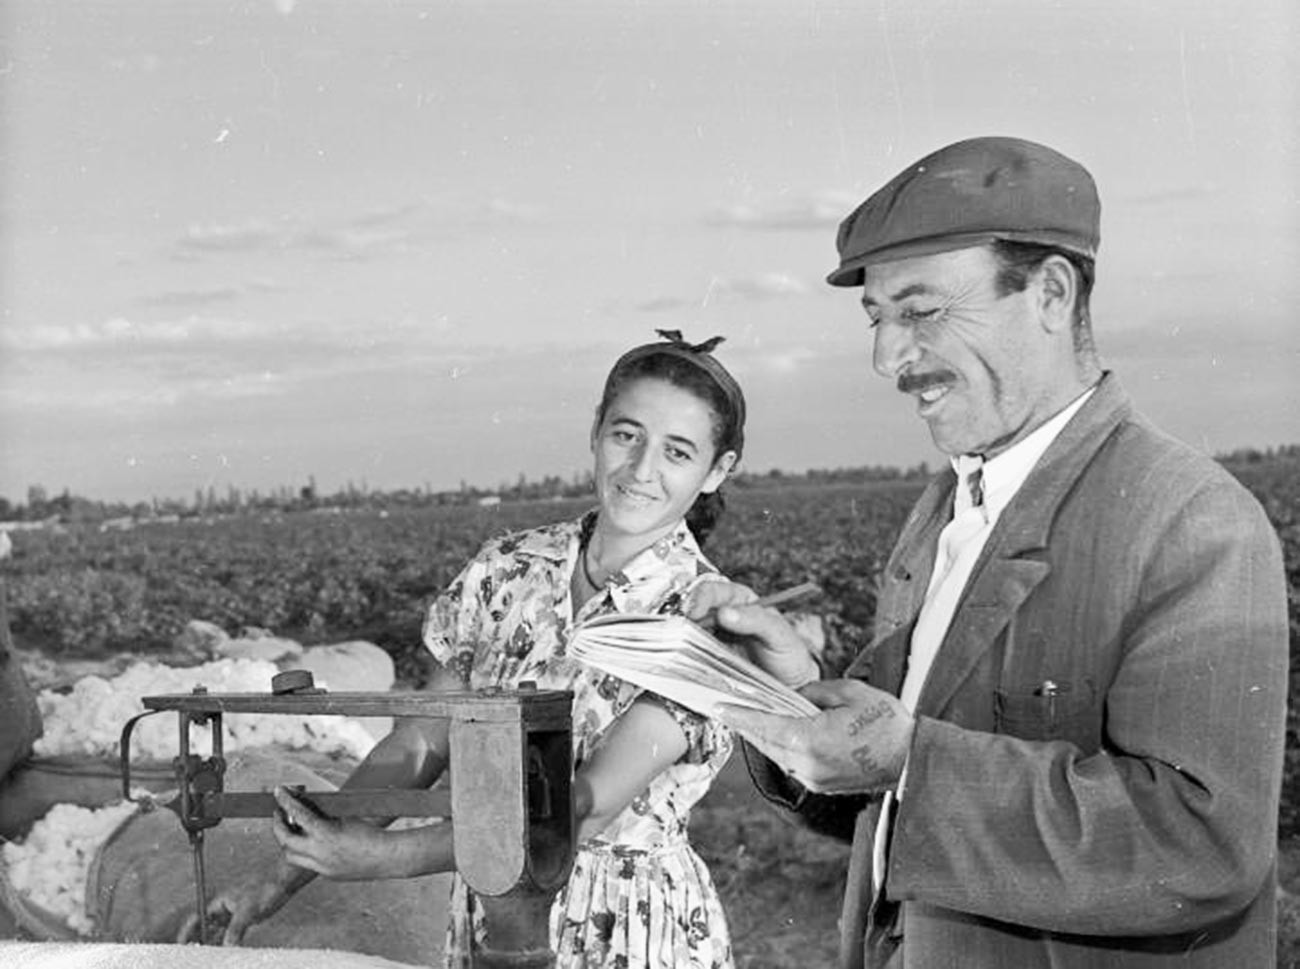 Des kolkhoziens arméniens pesant les récoltes de coton en 1955-1965

